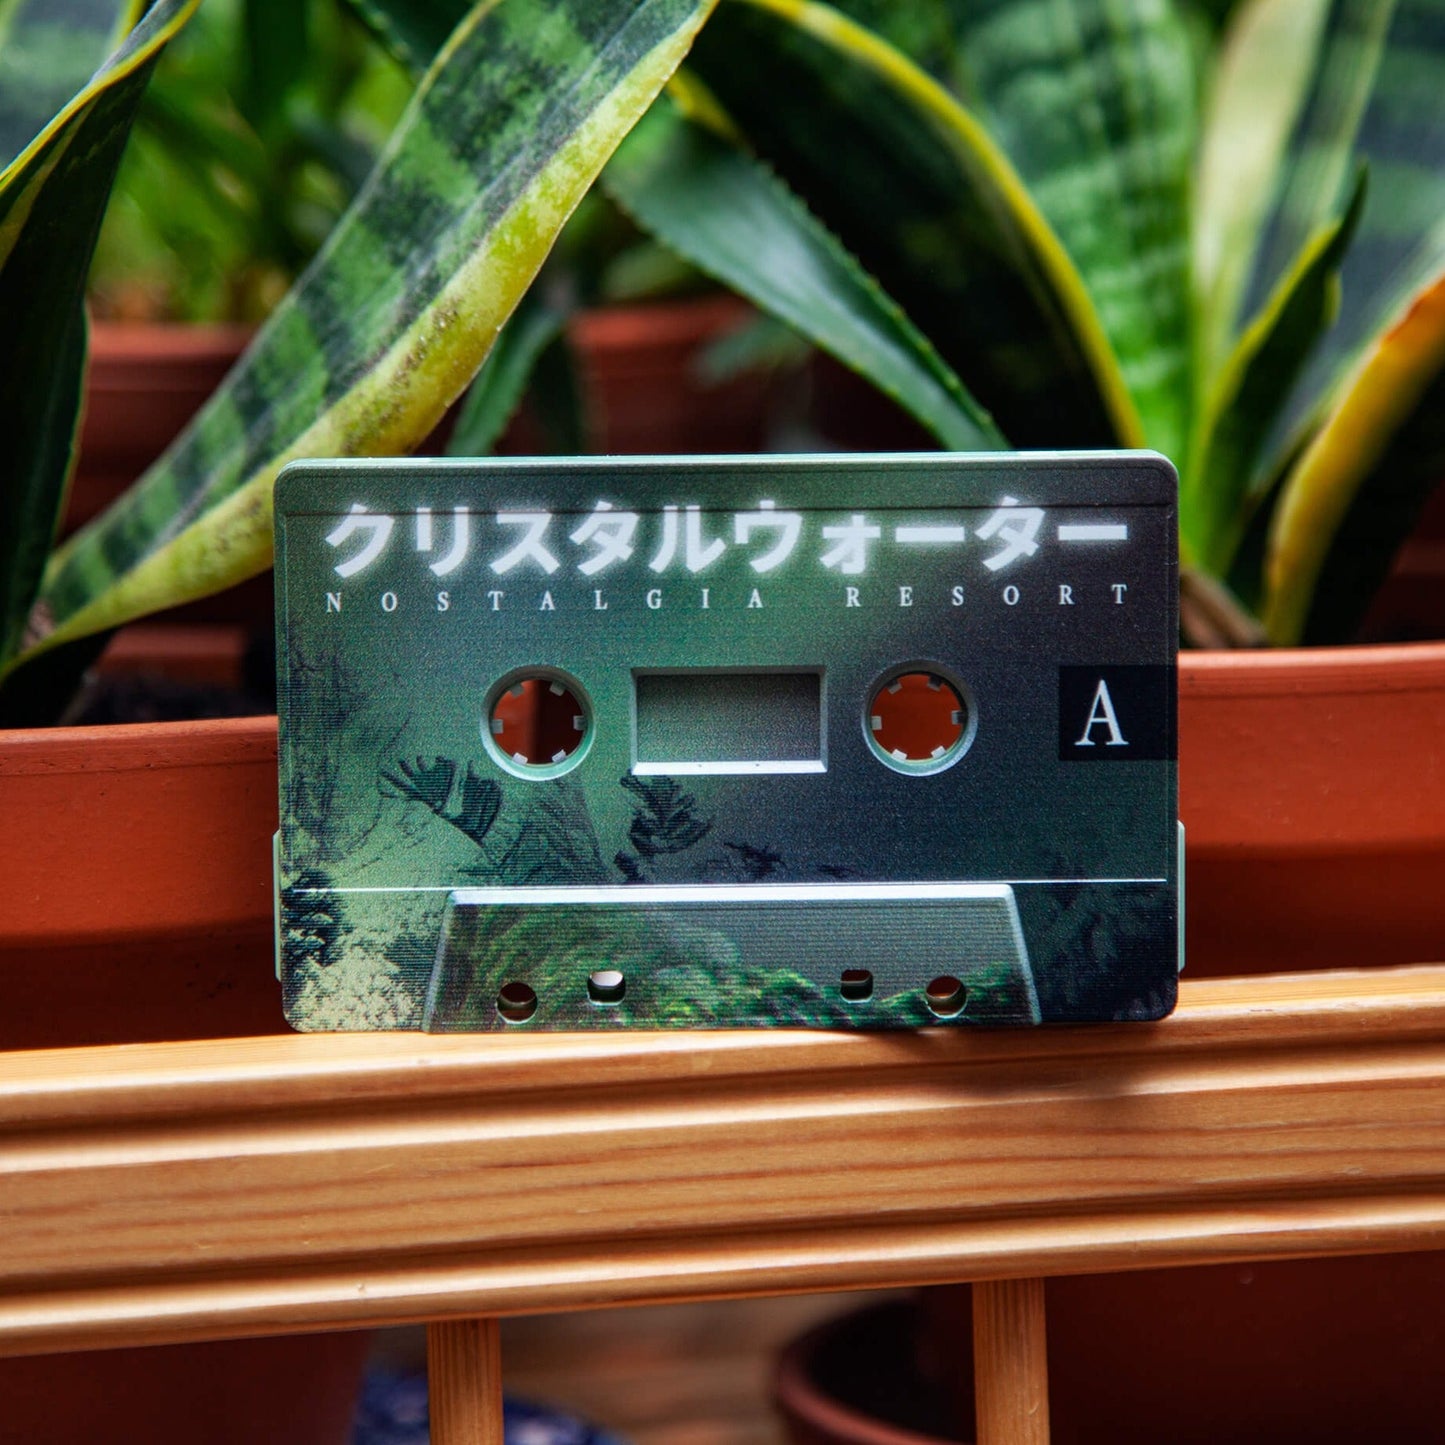 Nostalgia Resort - クリスタルウォーター cassette